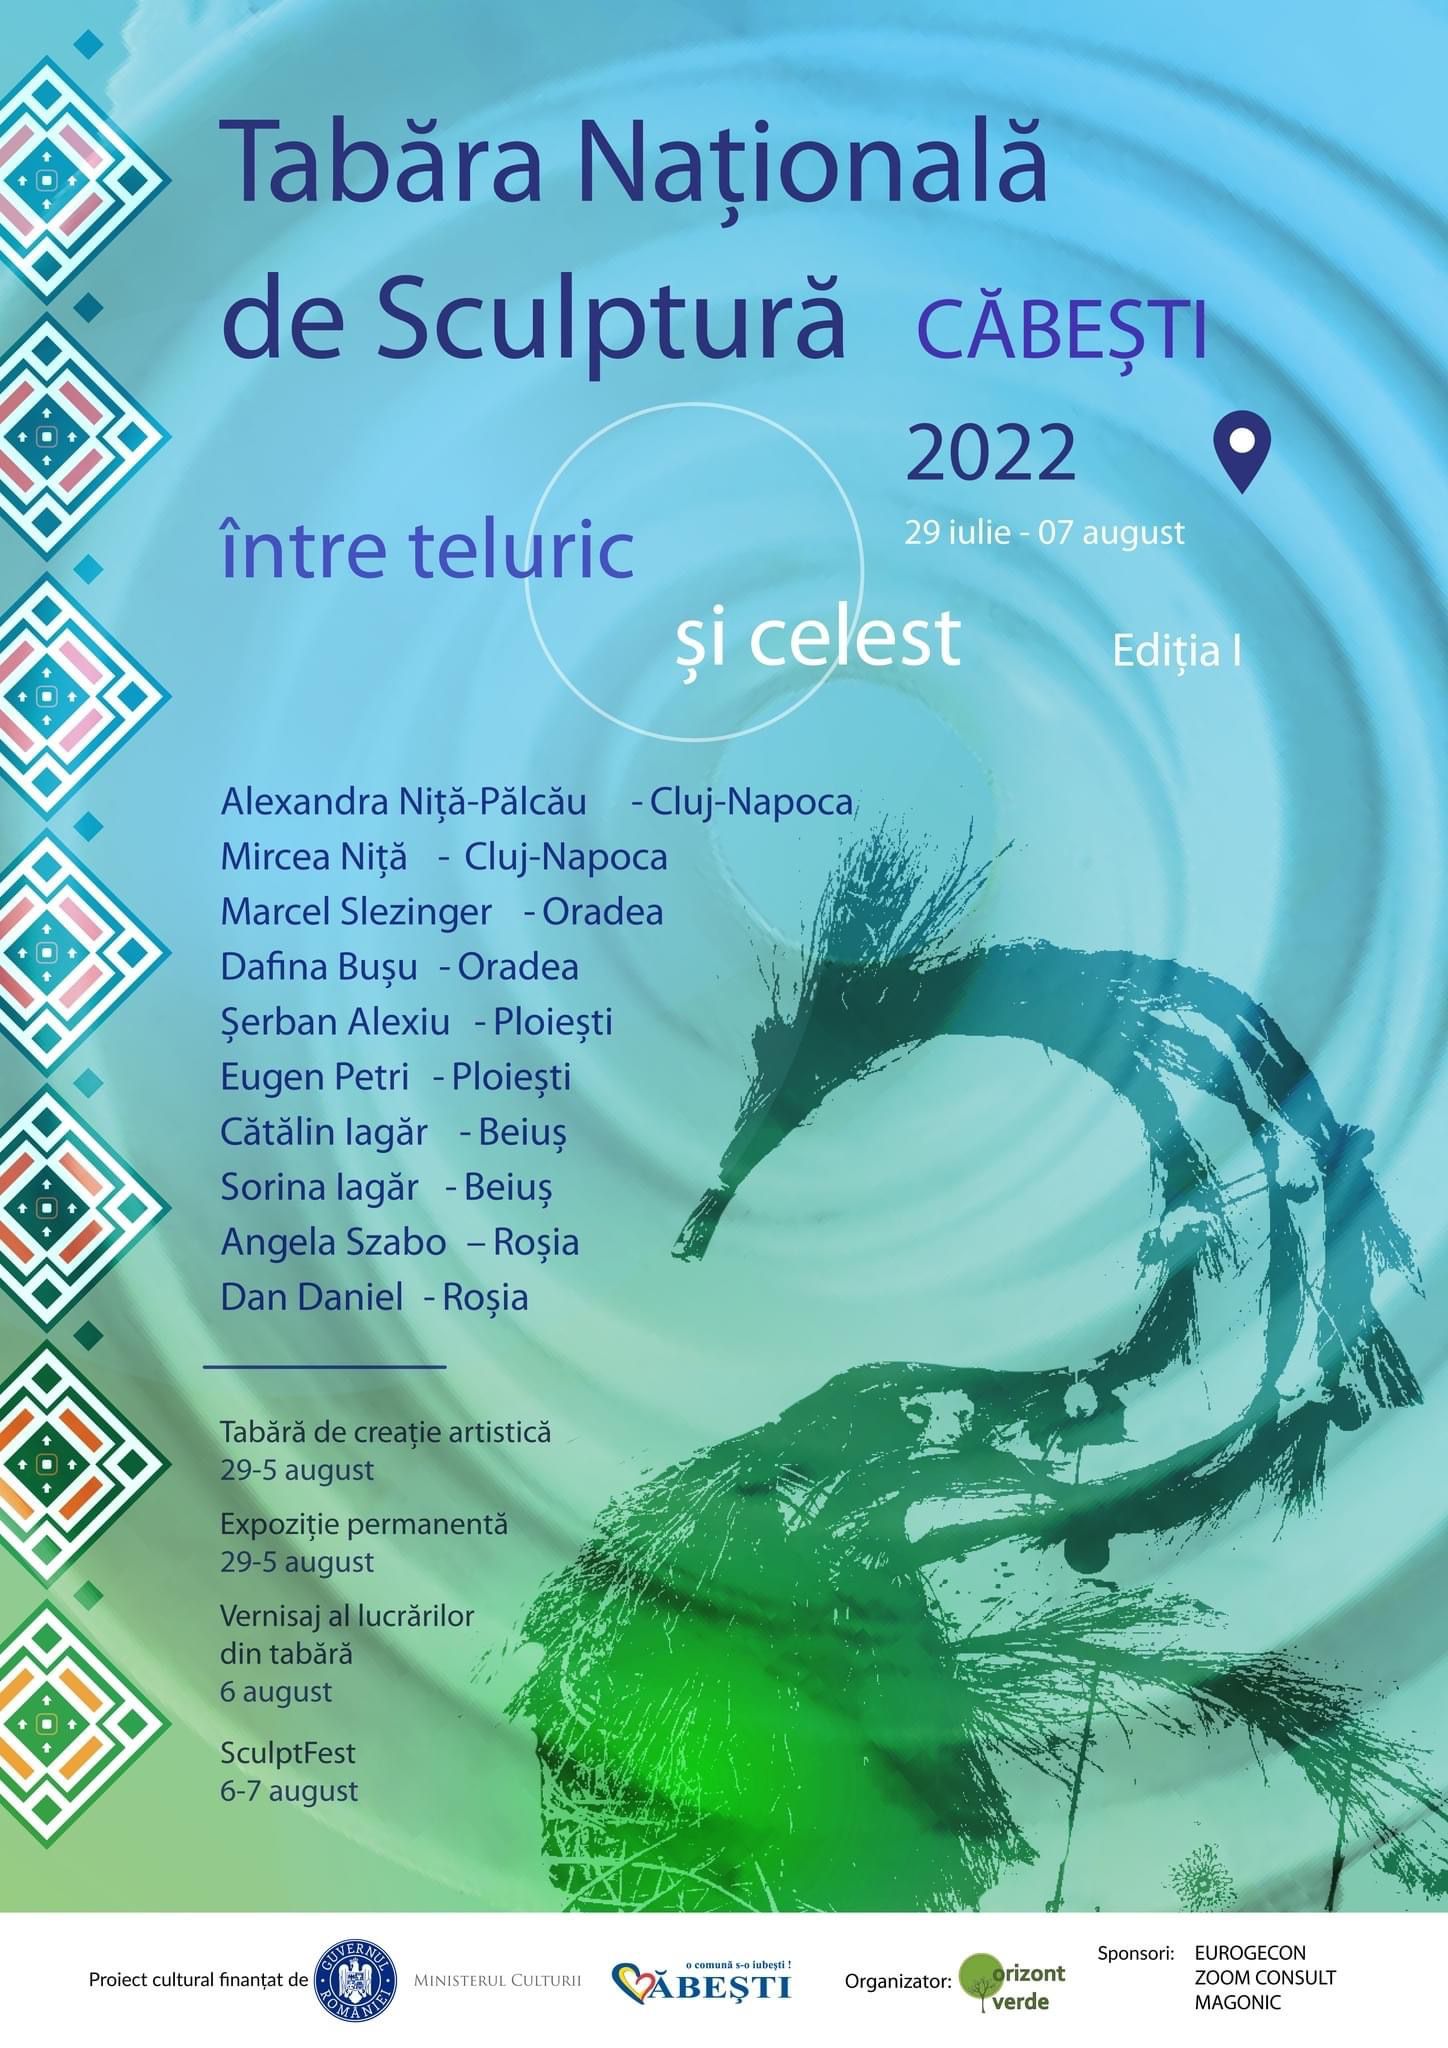 Tabăra Naţională de Sculptură Căbești “Între teluric și celest” & Festivalul SculptFEST